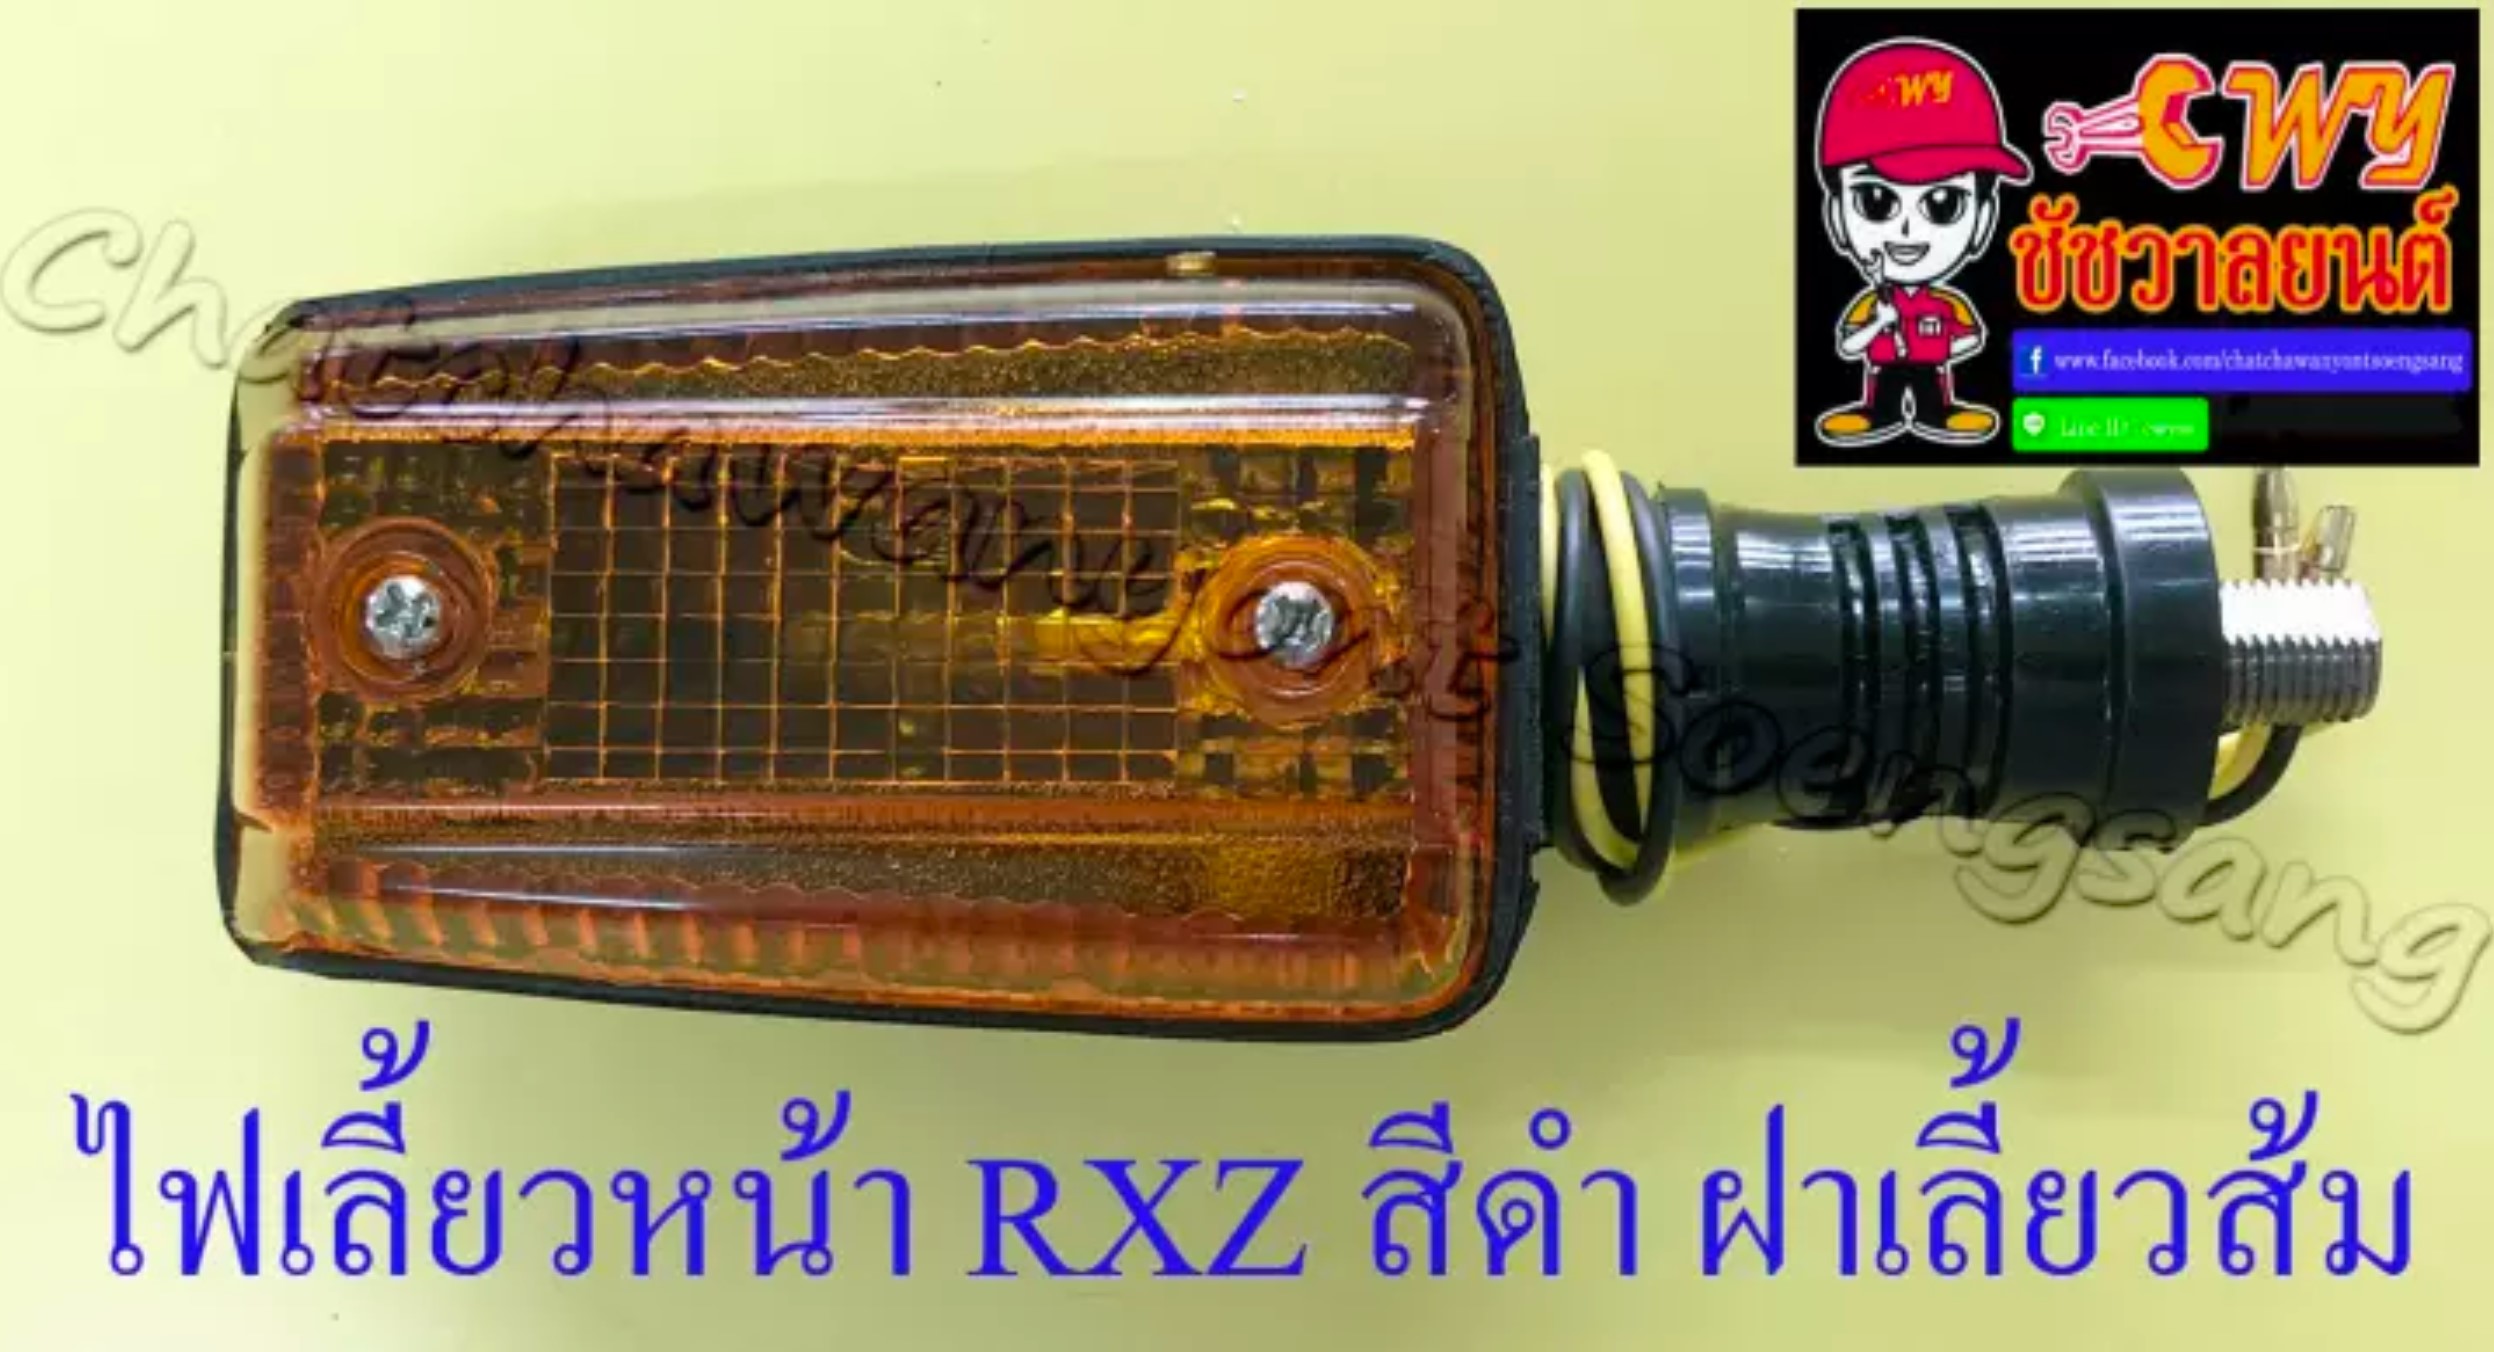 ไฟเลี้ยวหน้า RXZ สีดำ ฝาไฟเลี้ยวสีส้ม(เหลือง) (ข้าง) (33222)